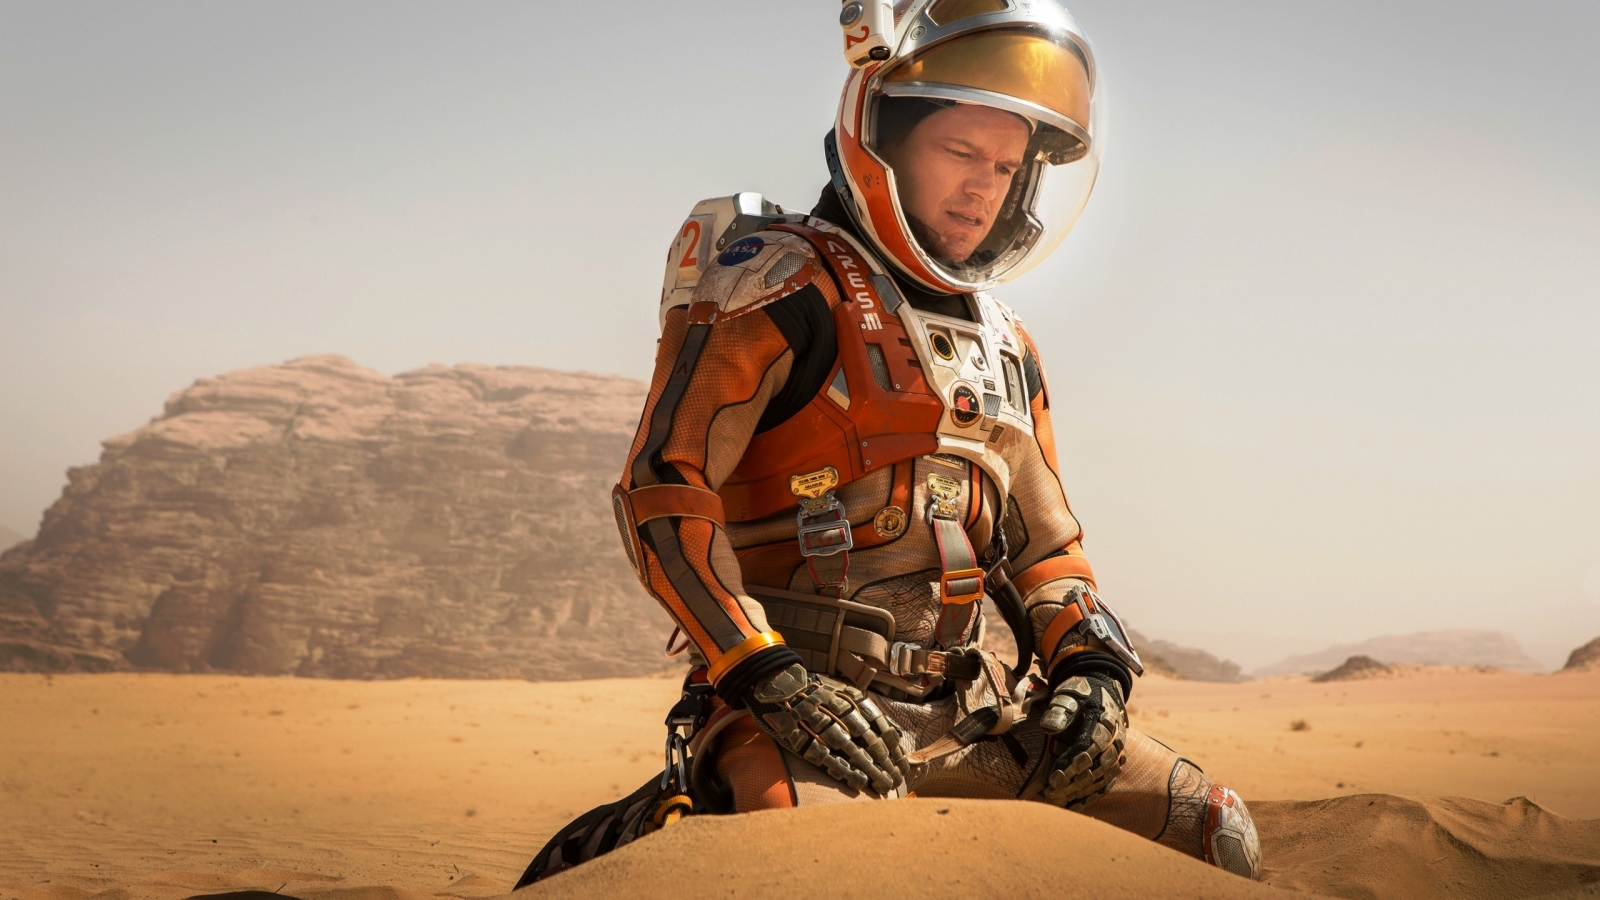 The Martian Matt Damon for 1600 x 900 HDTV resolution